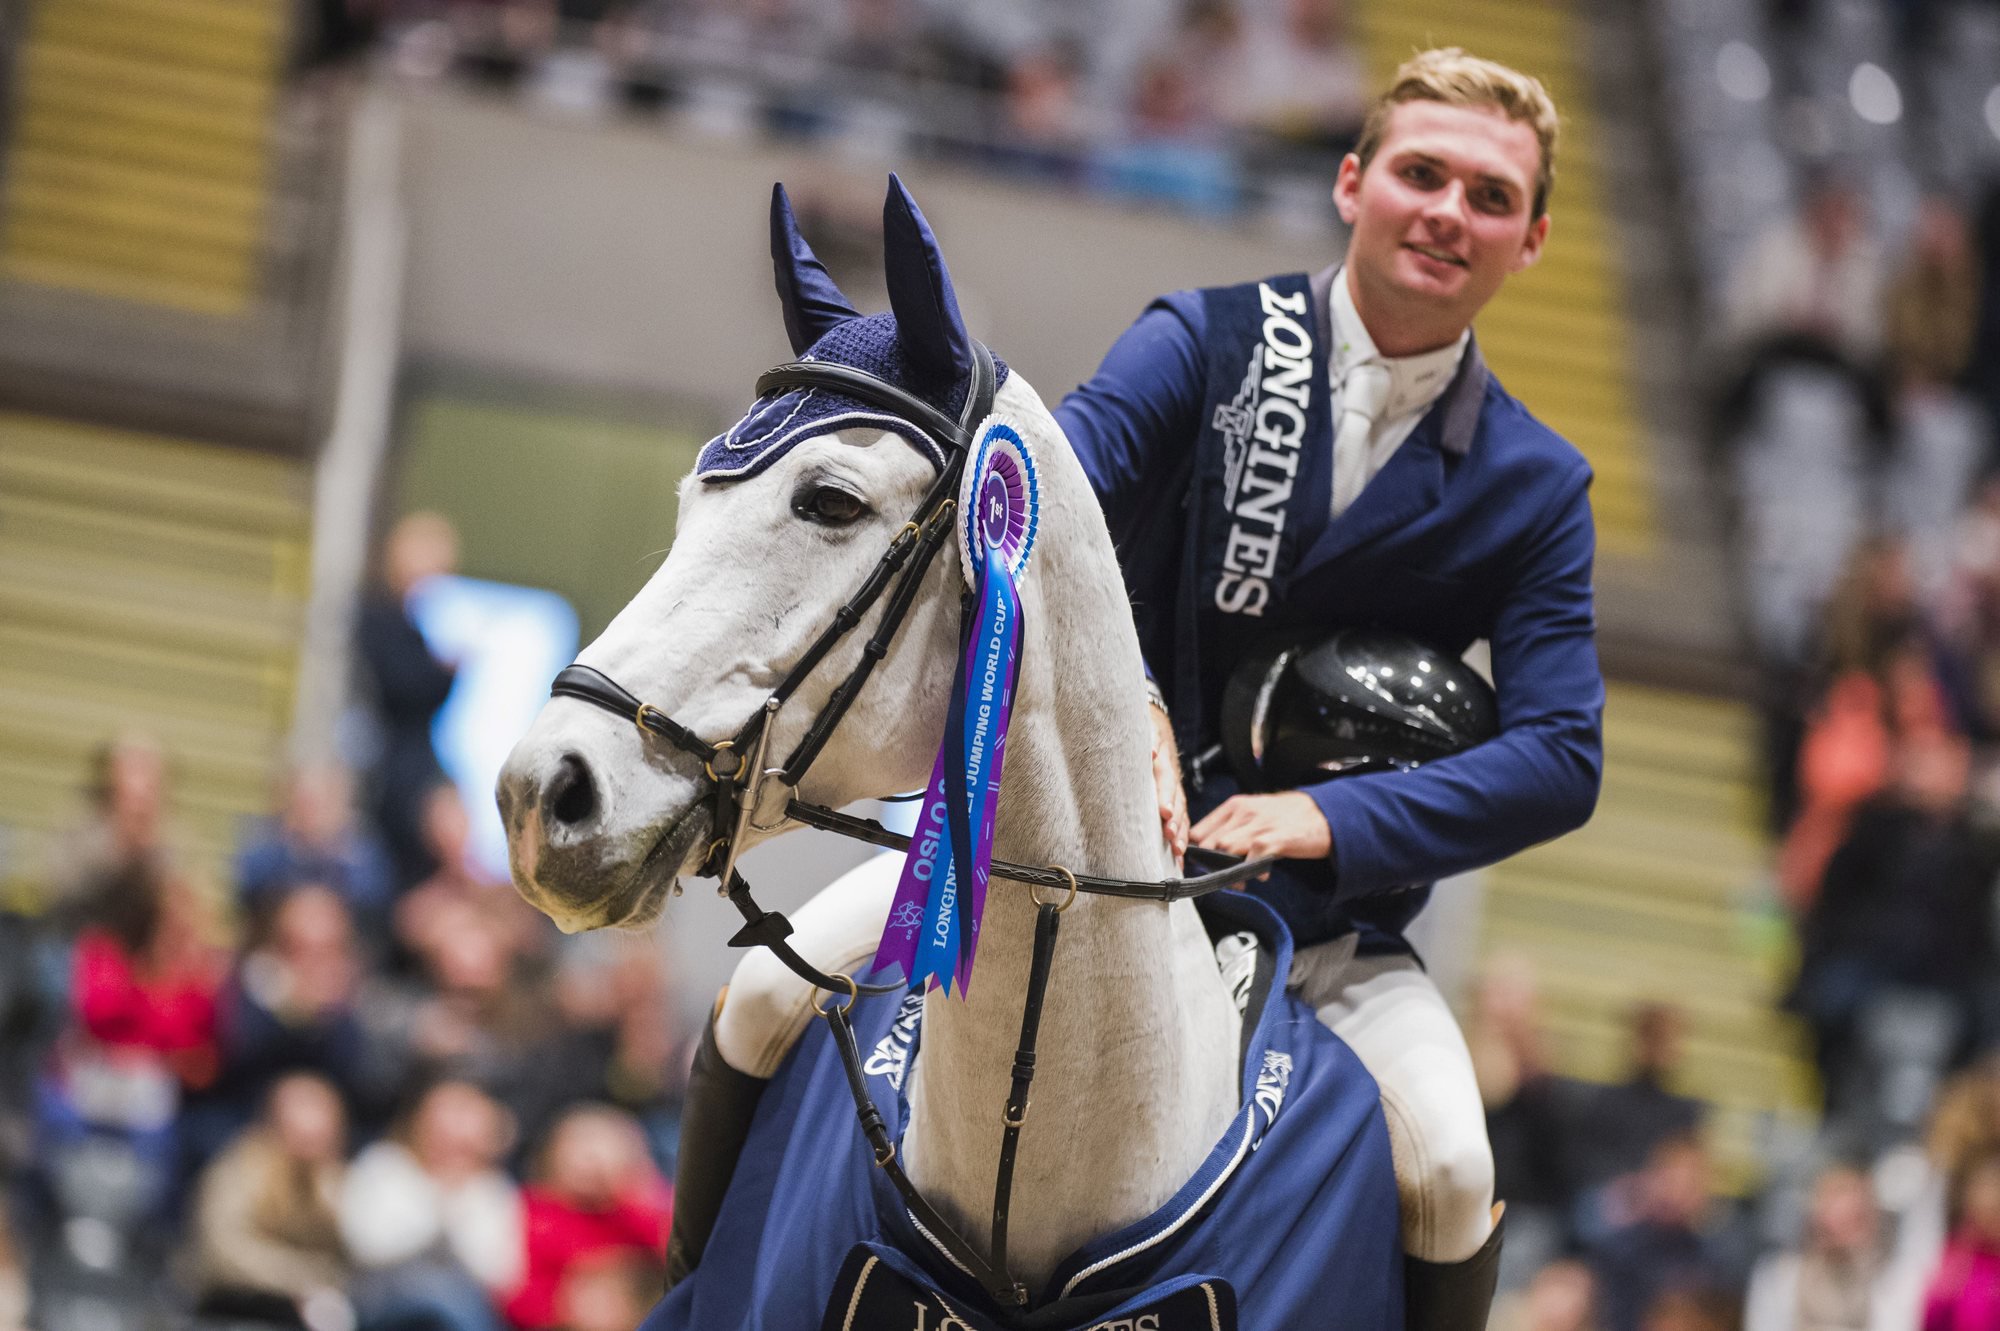 Bryan Balsiger lors de son triomphe à Oslo, sur son cheval "Clouzot de Lassus".